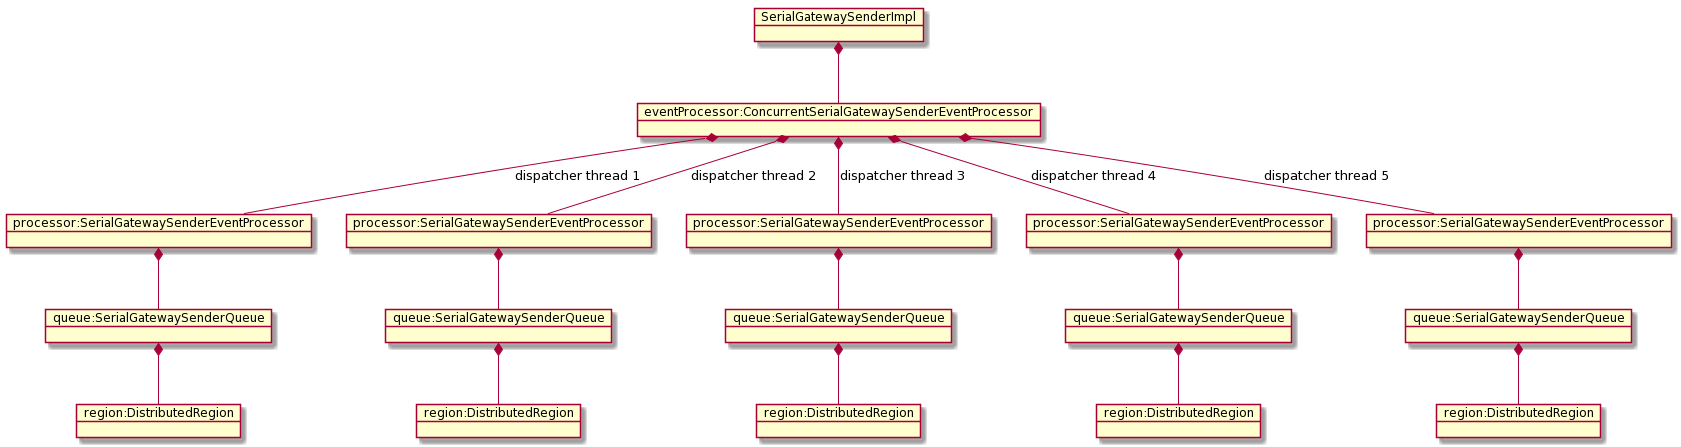 Multiple SerialGatewaySenderEventProcessors connected to a ConcurrentSerialGatewaySenderEventProcessor inheriting from SerialGatewaySenderImpl